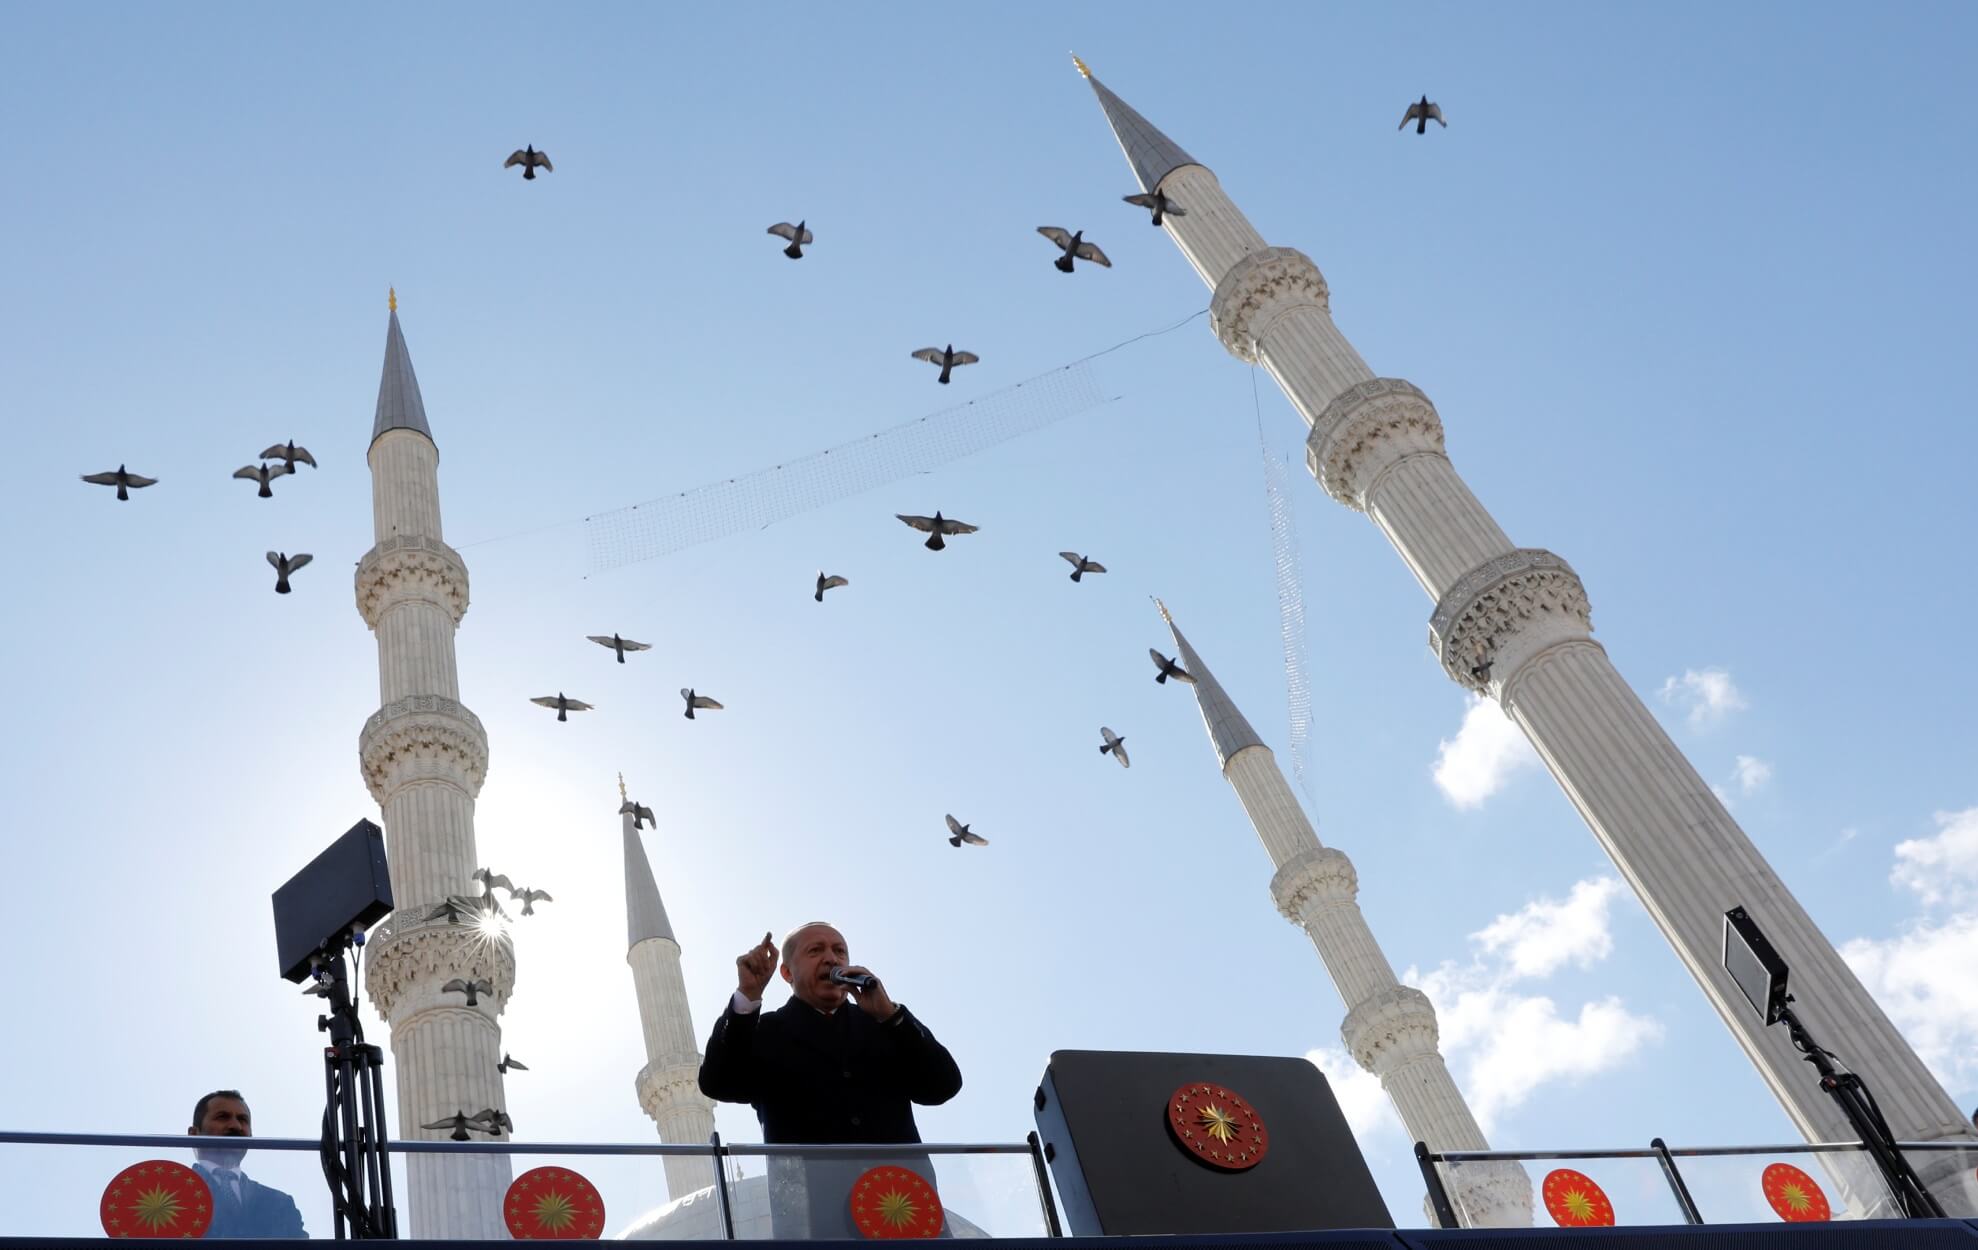 Τουρκία: Αυτοδιοικητικές εκλογές μέσα σε οικονομικό χάος – Κρας τεστ για τον Ερντογάν που “σημαδεύει” την Αγια Σοφιά!